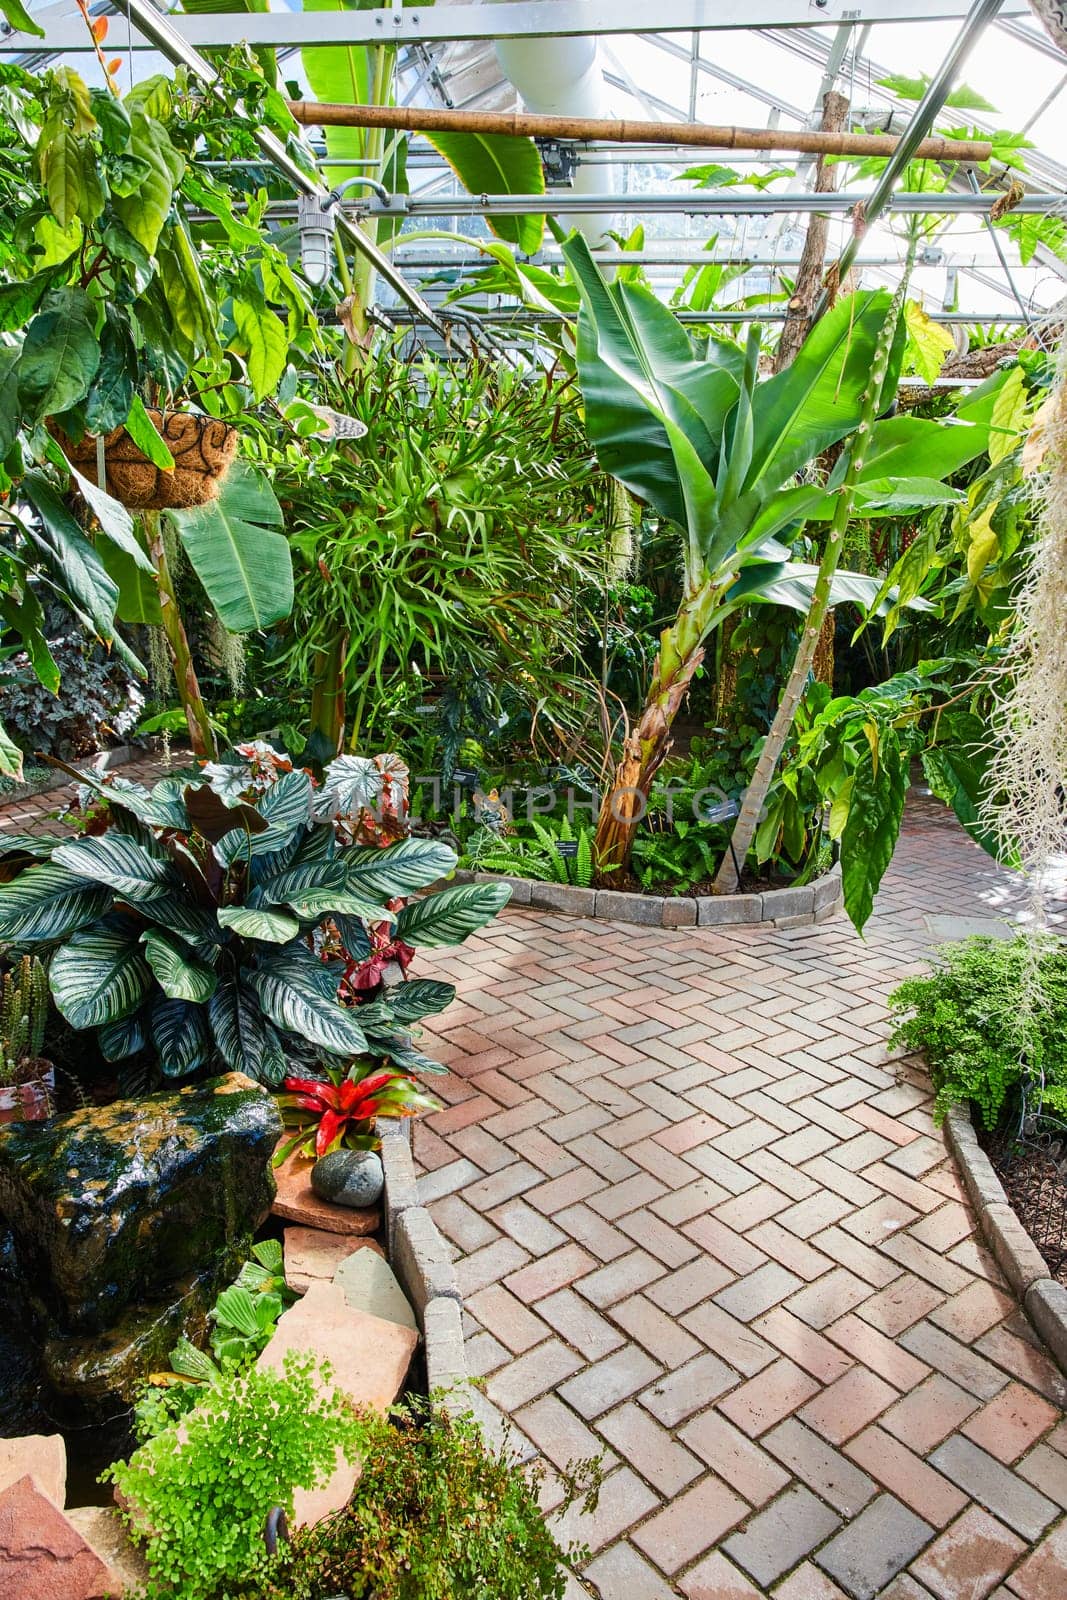 Tropical Greenhouse Interior, Muncie Indiana 2023 - A Tranquil Journey through Verdant Botanical Splendor